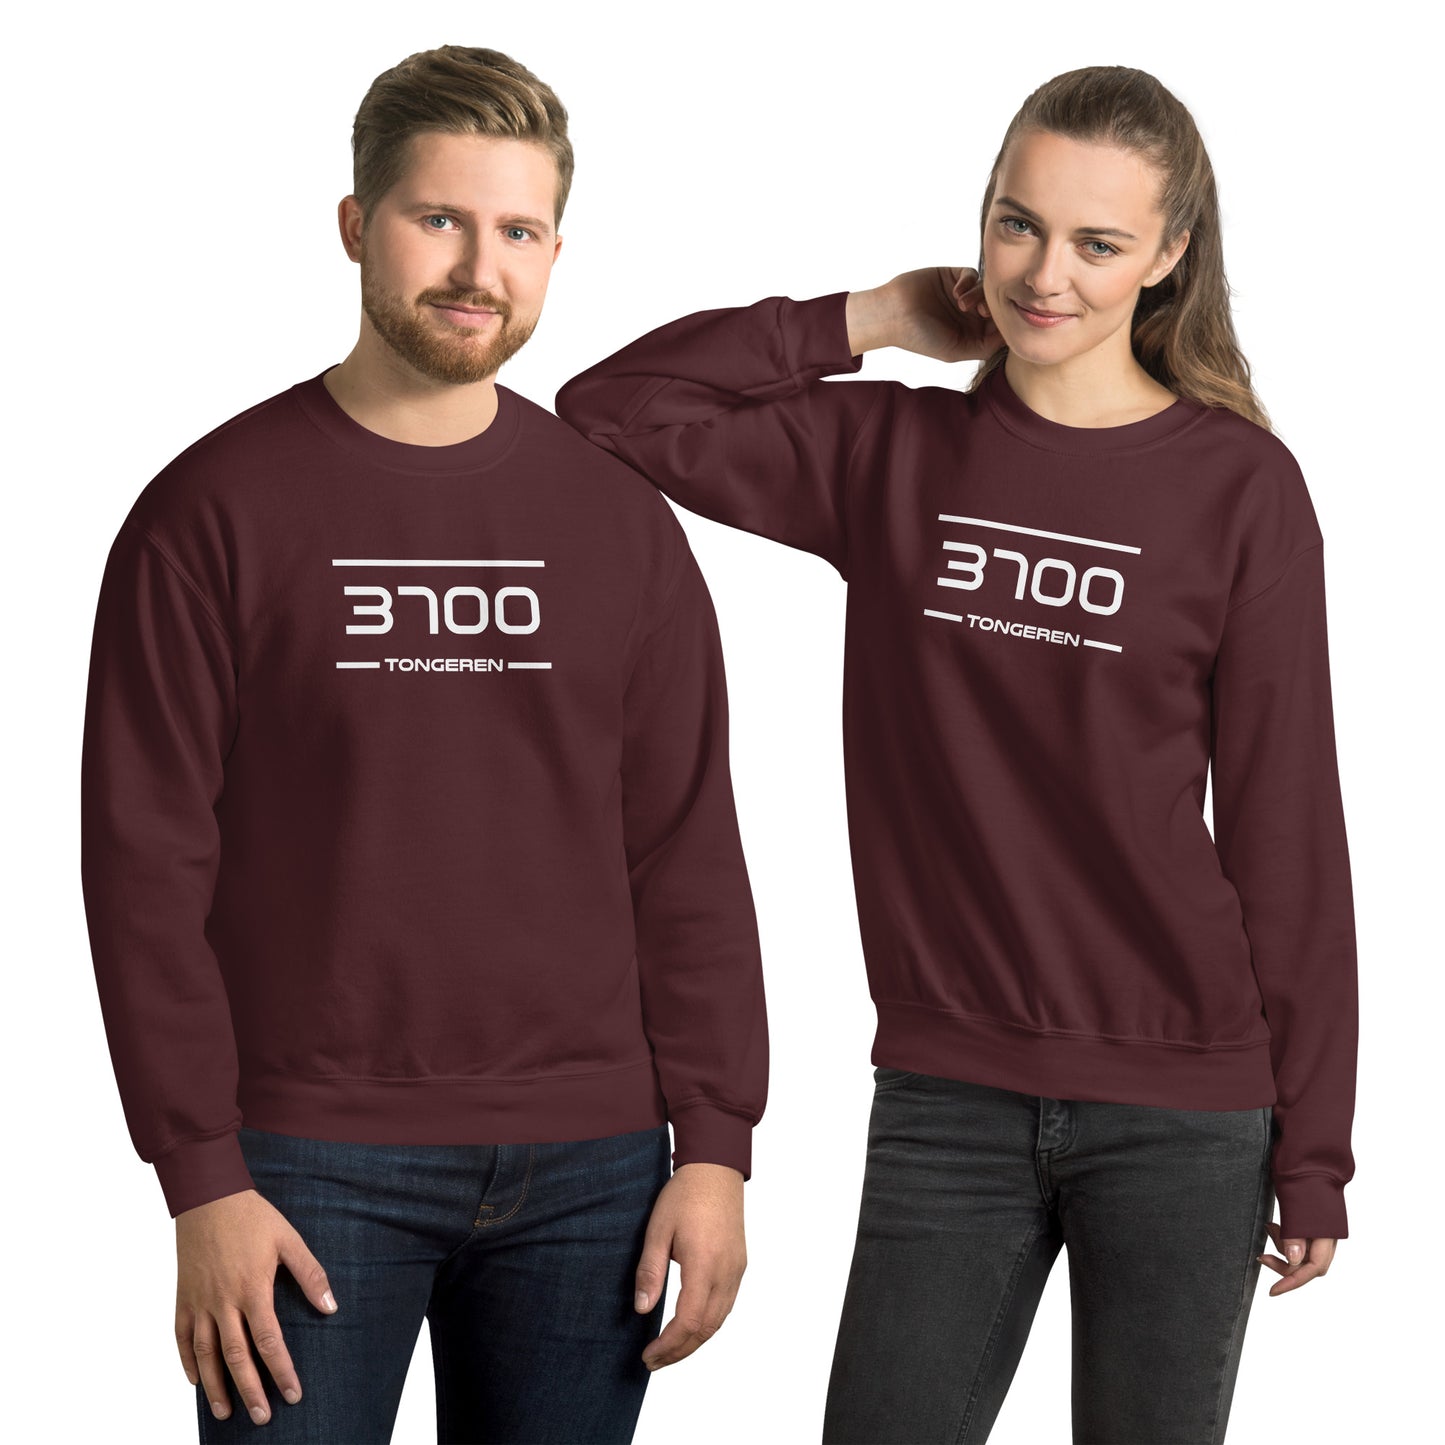 Sweater - 3700 - Tongeren (M/V)